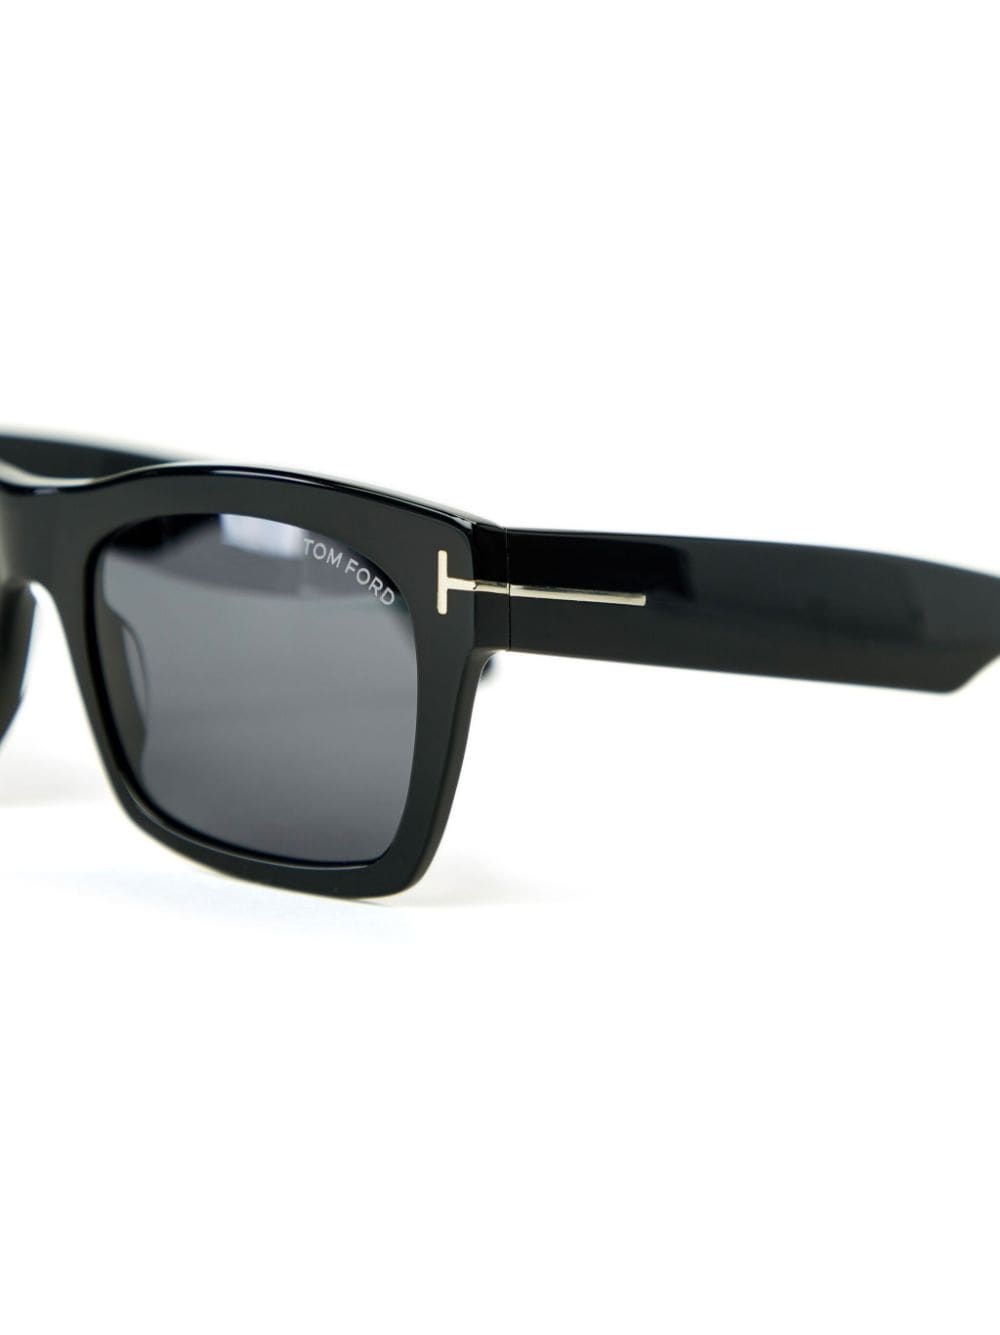 Nico 02 square-frame sunglasses - 3